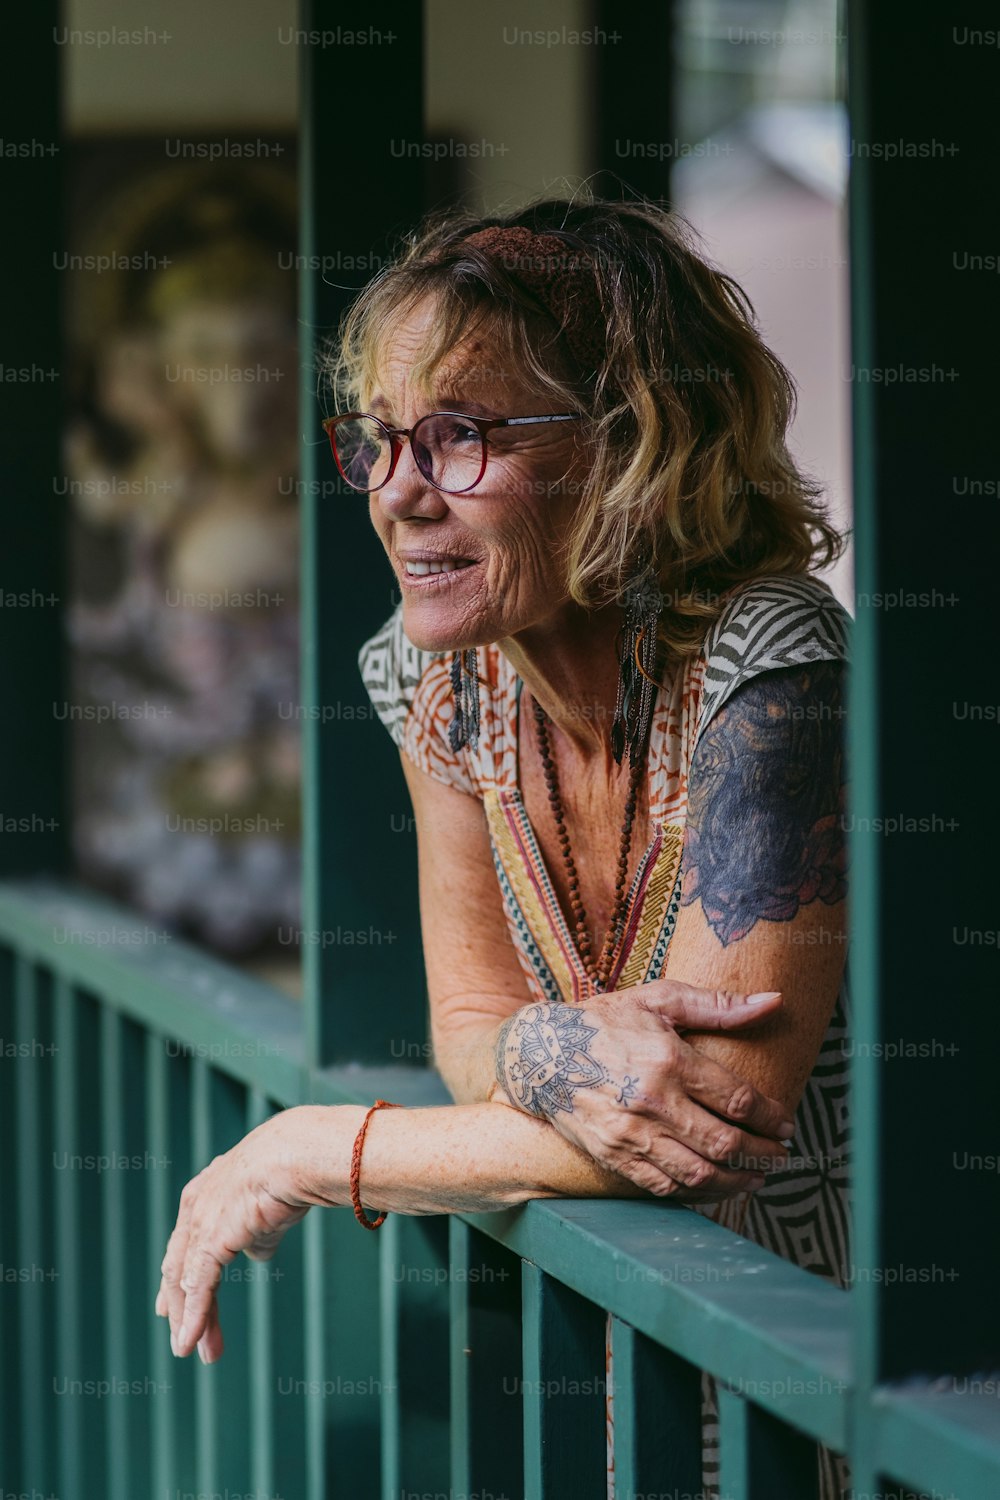 Una donna con tatuaggi sul braccio appoggiata a una ringhiera